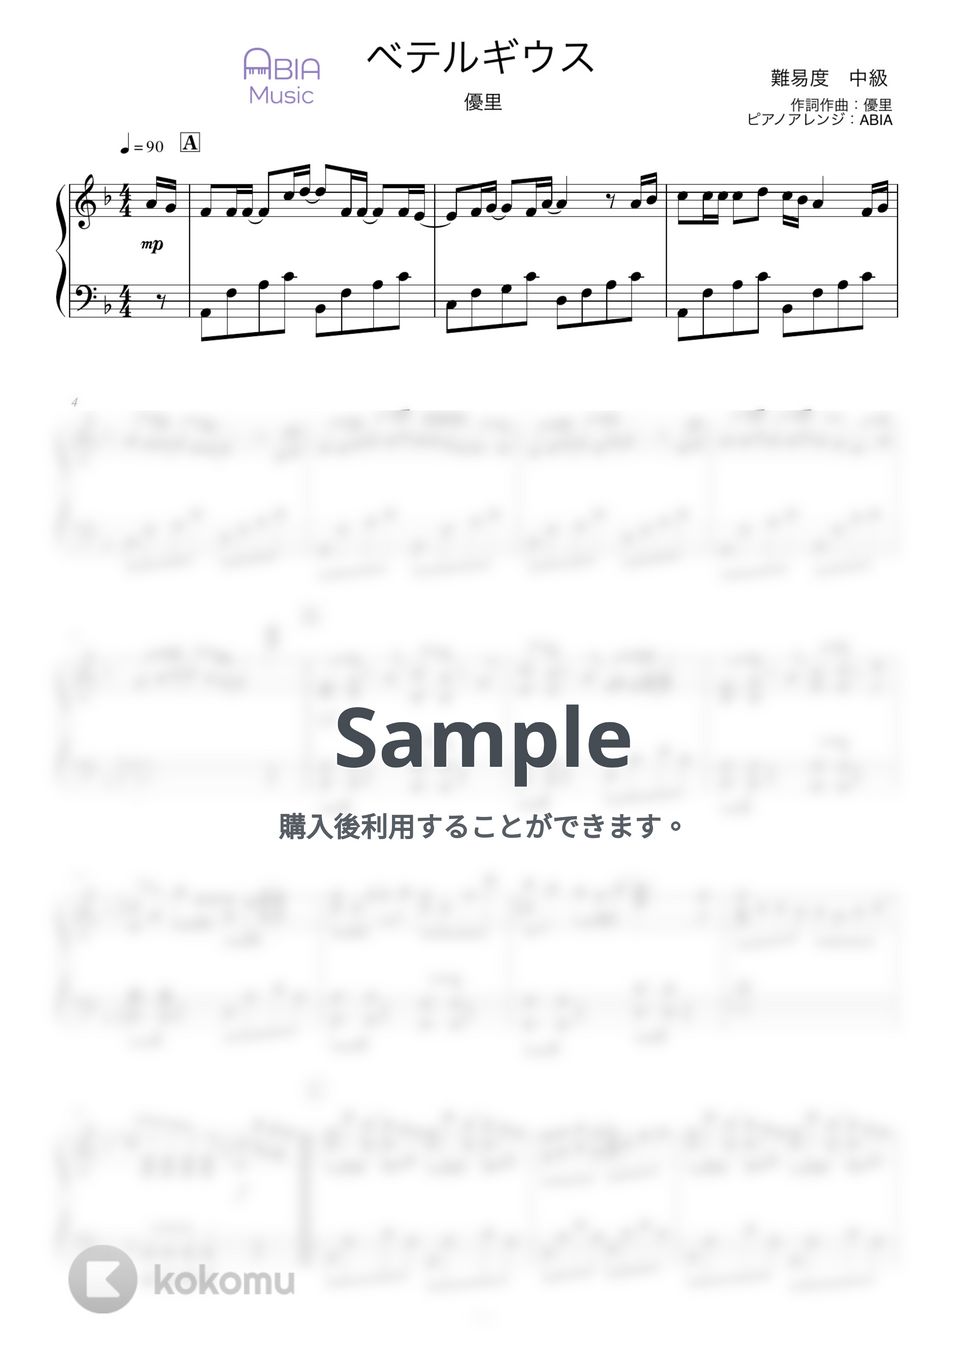 優里 - ベテルギウス by ABIA Music